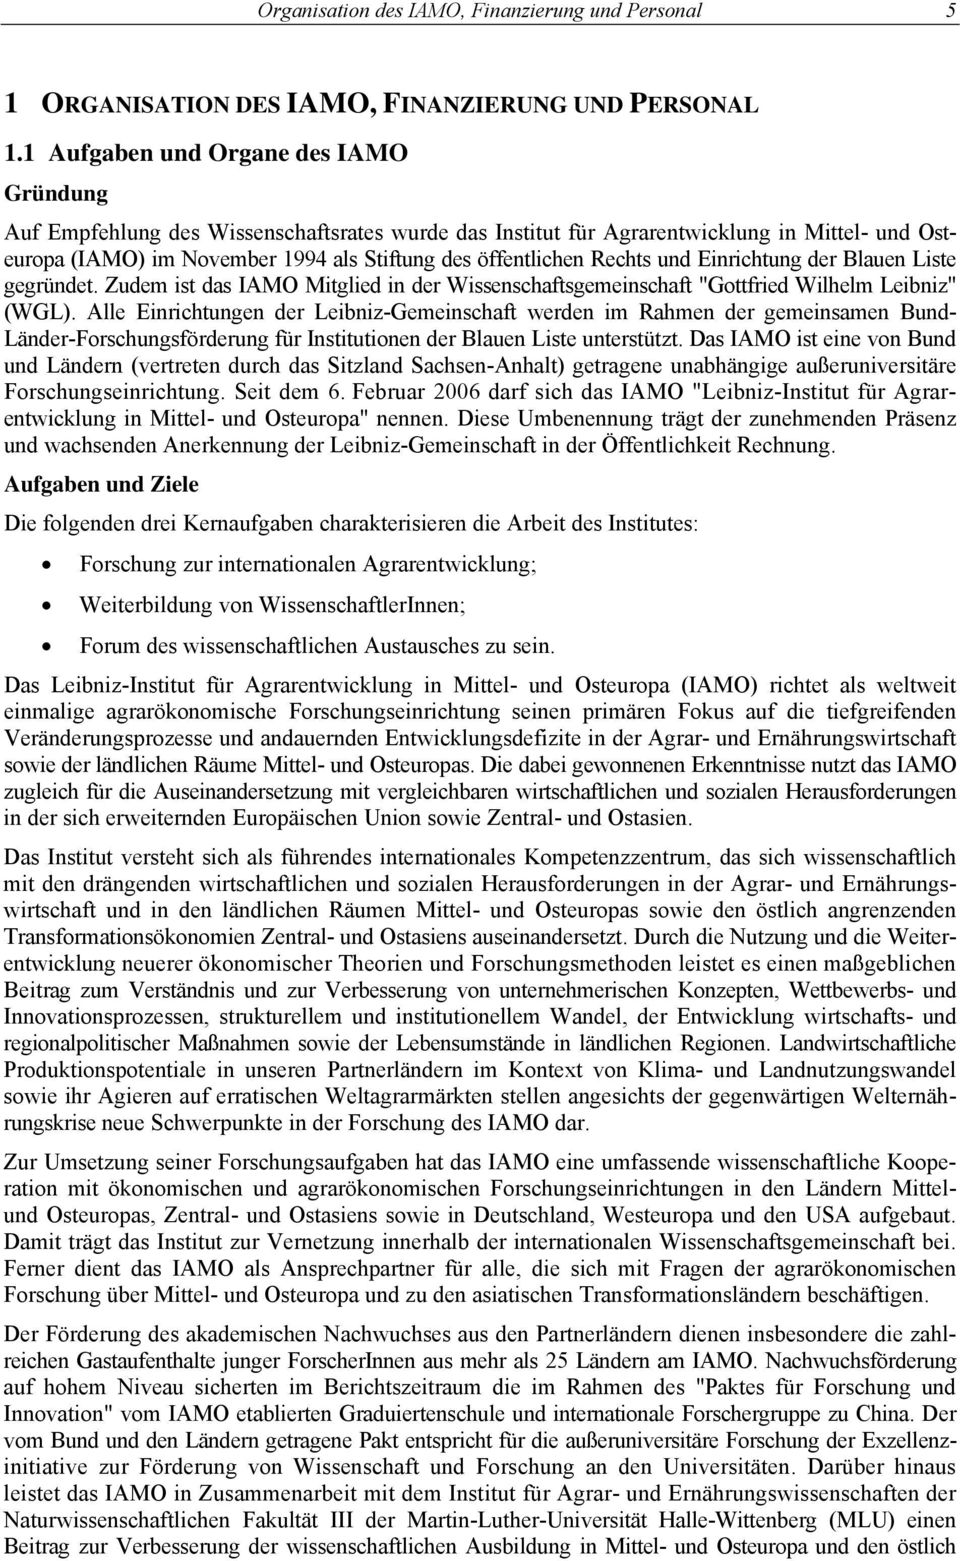 Rechts und Einrichtung der Blauen Liste gegründet. Zudem ist das IAMO Mitglied in der Wissenschaftsgemeinschaft "Gottfried Wilhelm Leibniz" (WGL).